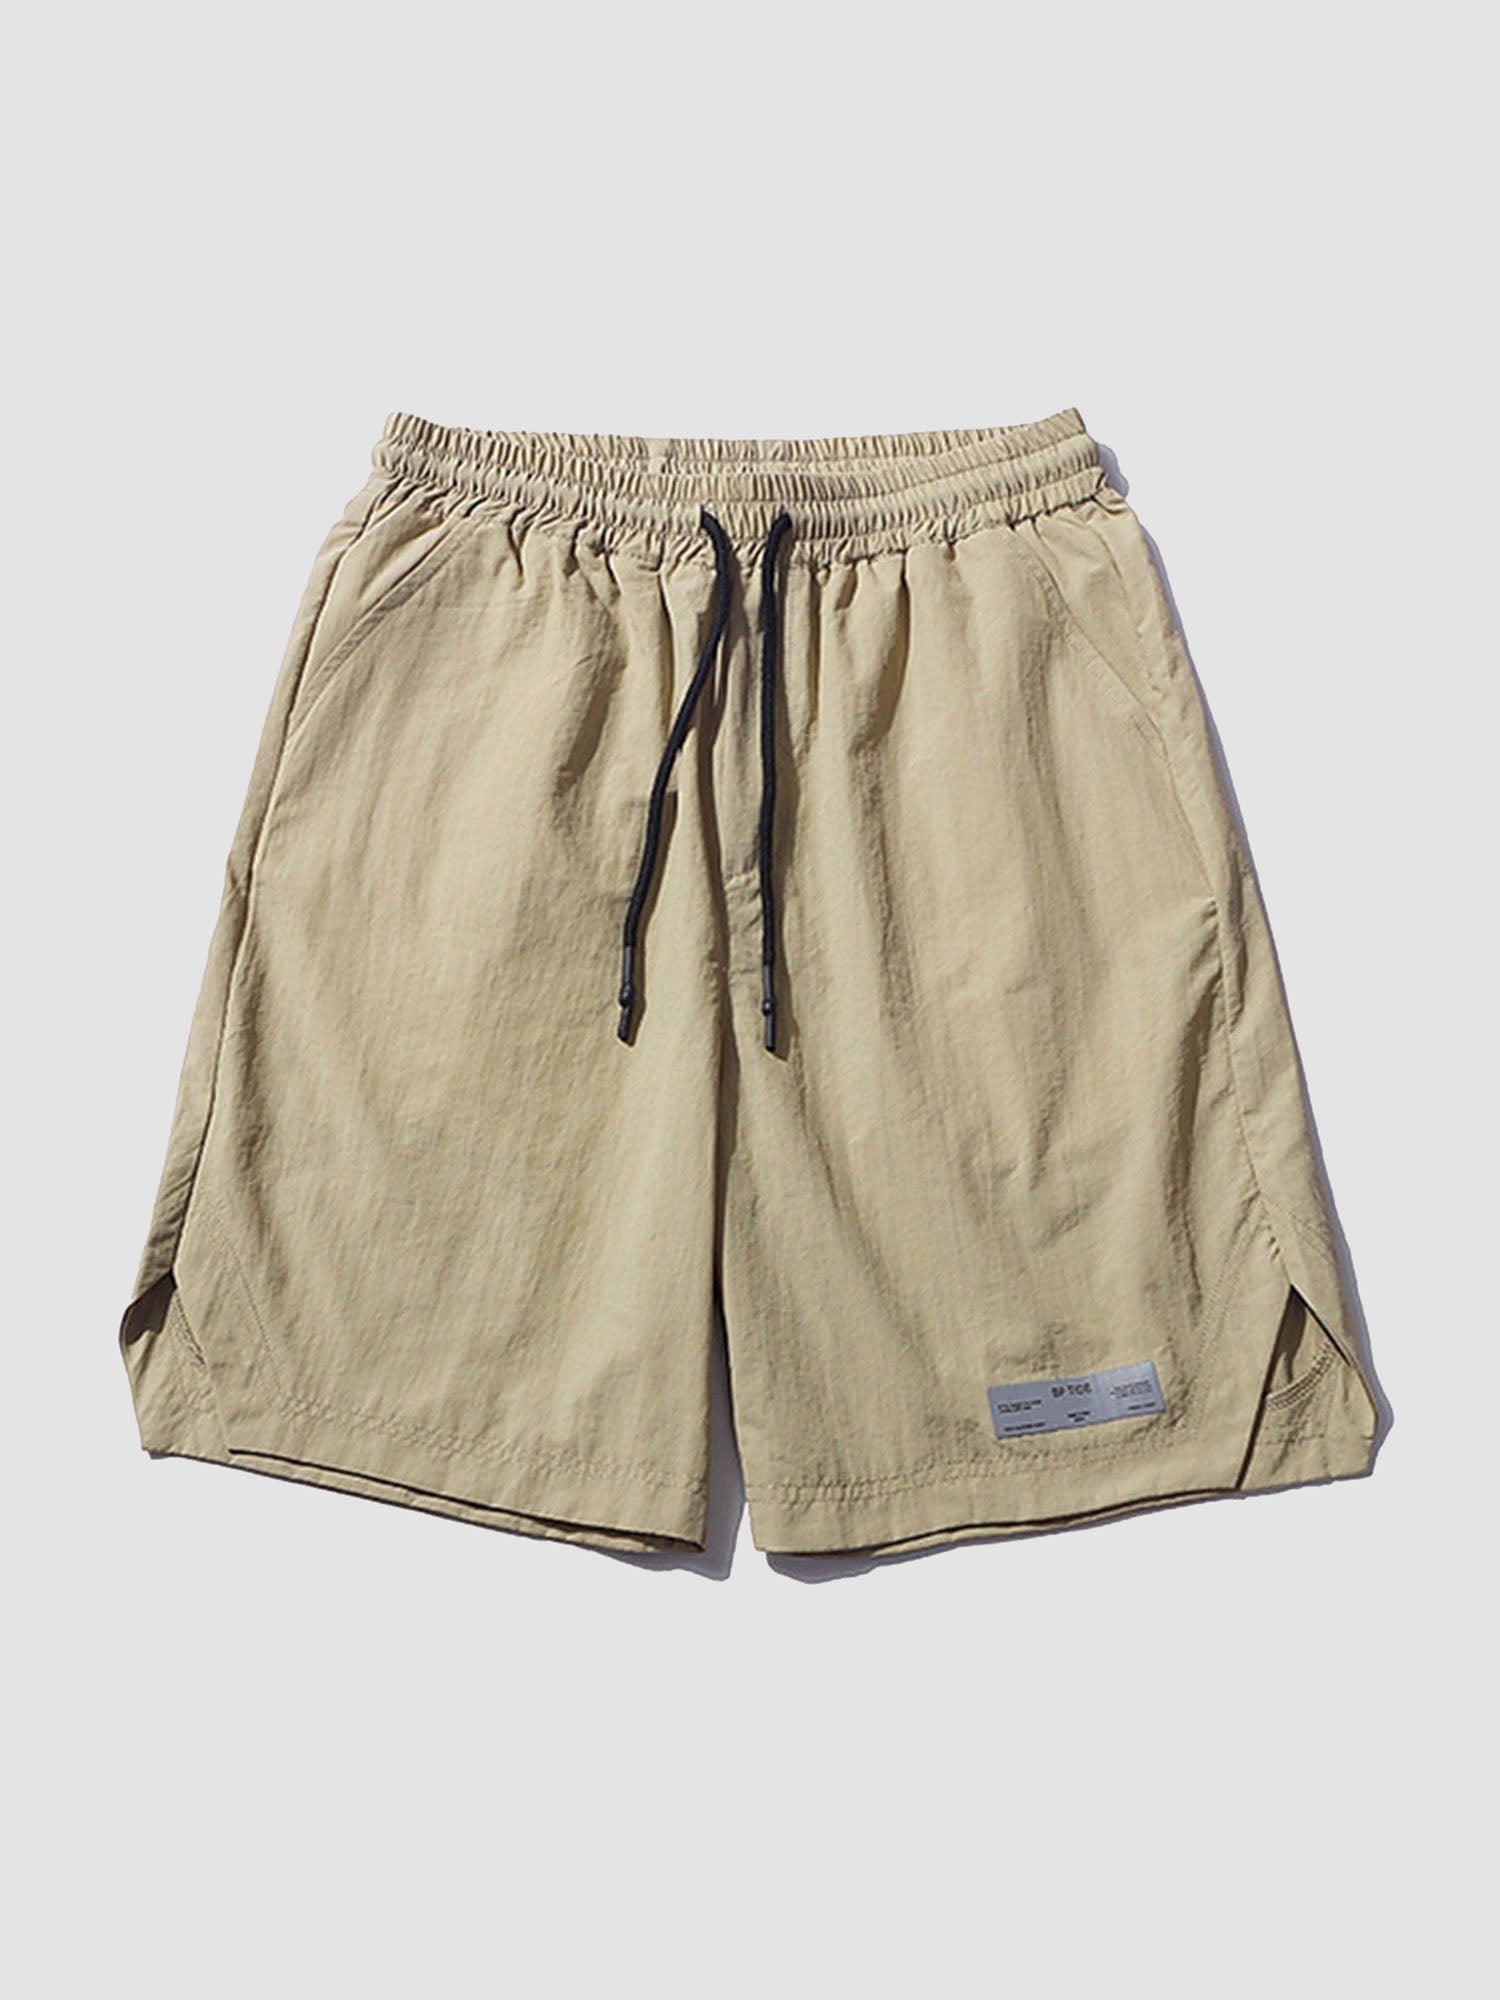 JUSTNOTAG Solid Color Cargo Shorts Drawstring Waist Shorts